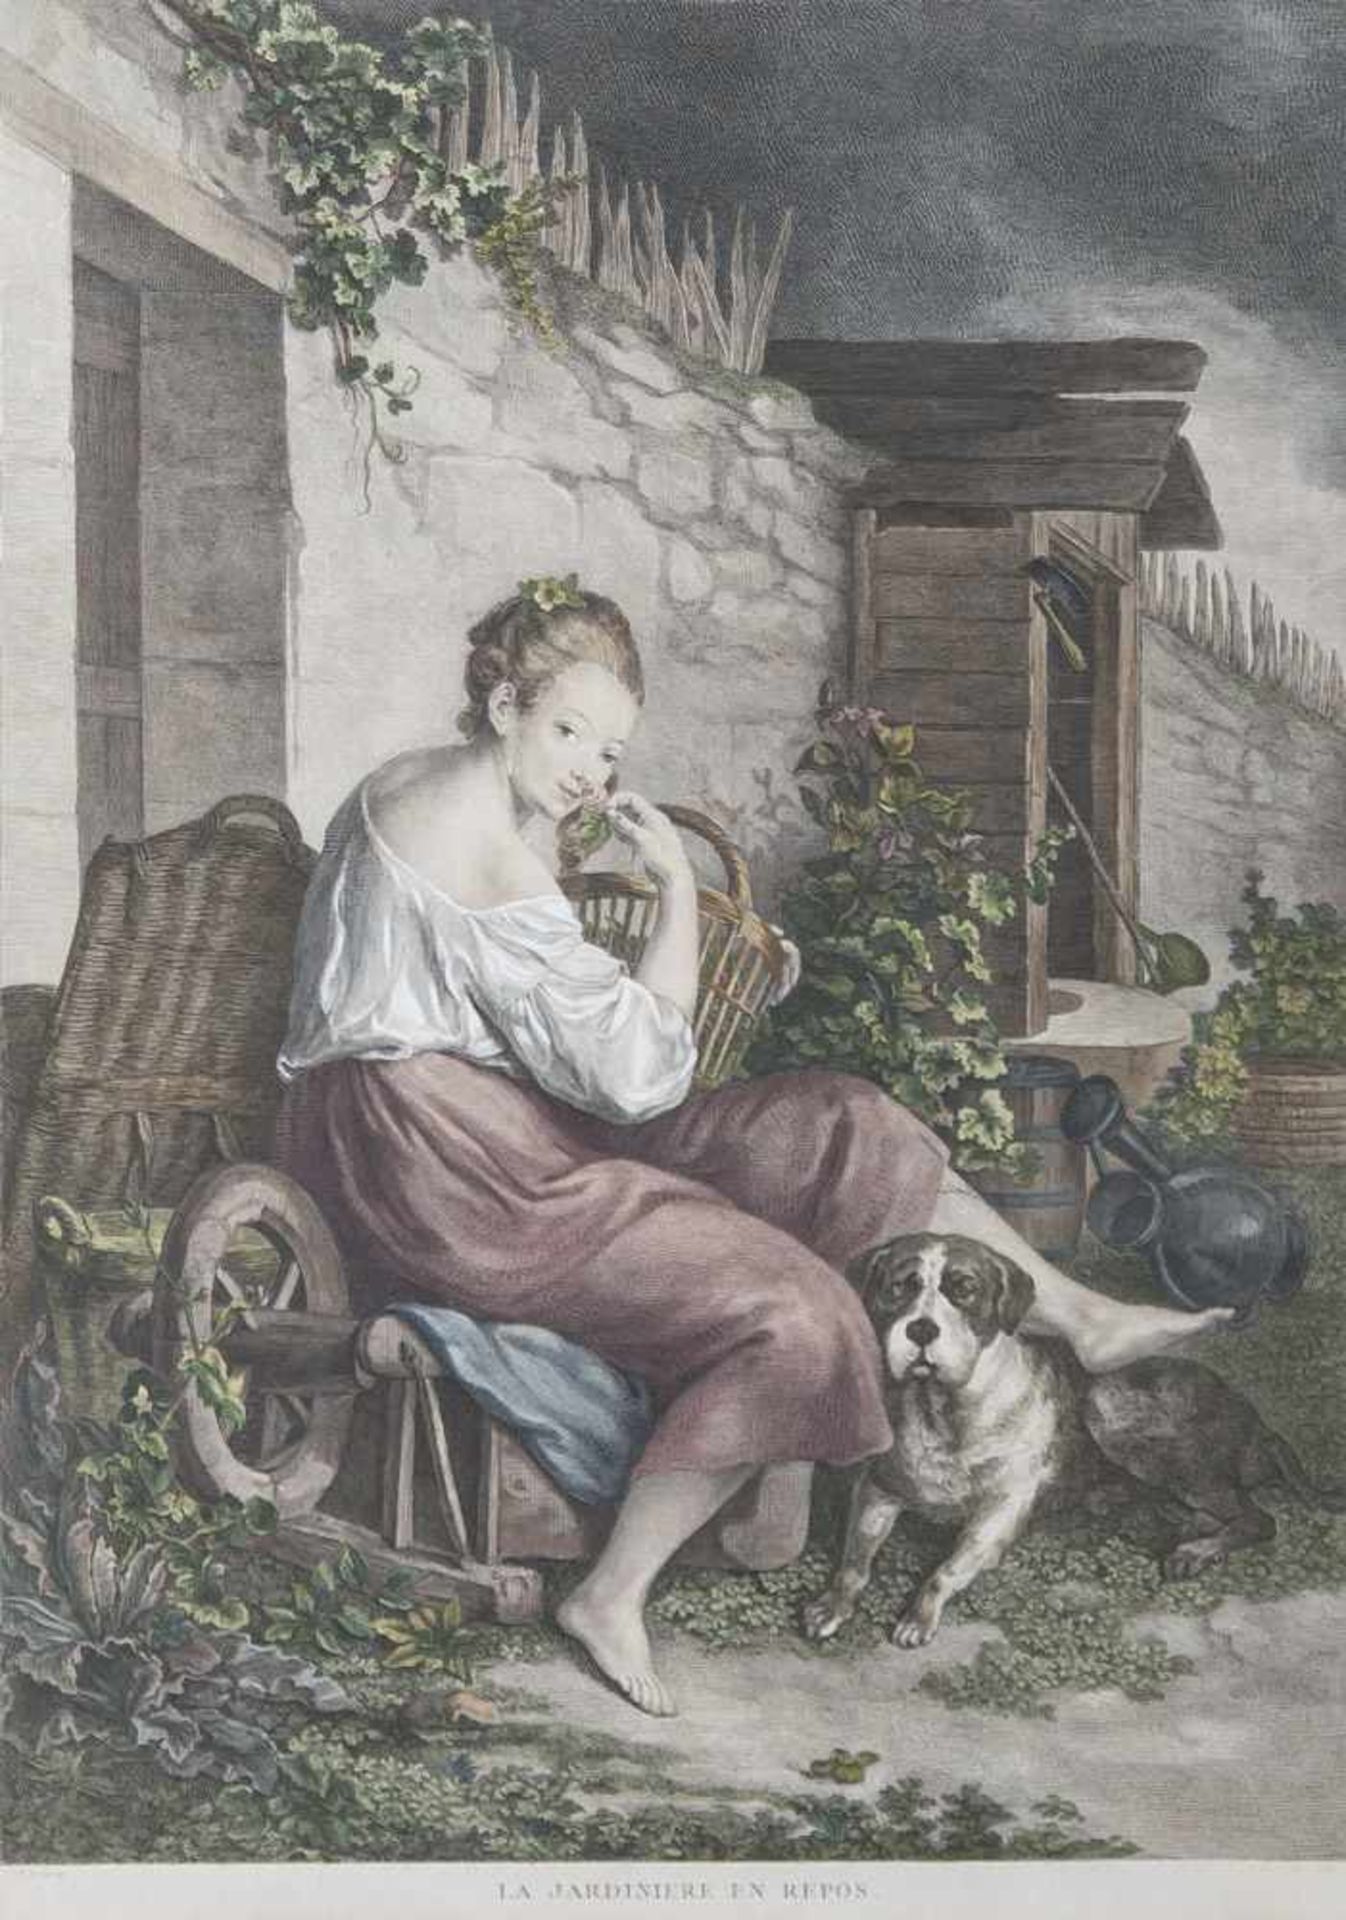 Altkolorierter Kupferstich nach De Peters, Jean Antoine (1725-1795), "La jardinière en repos", in